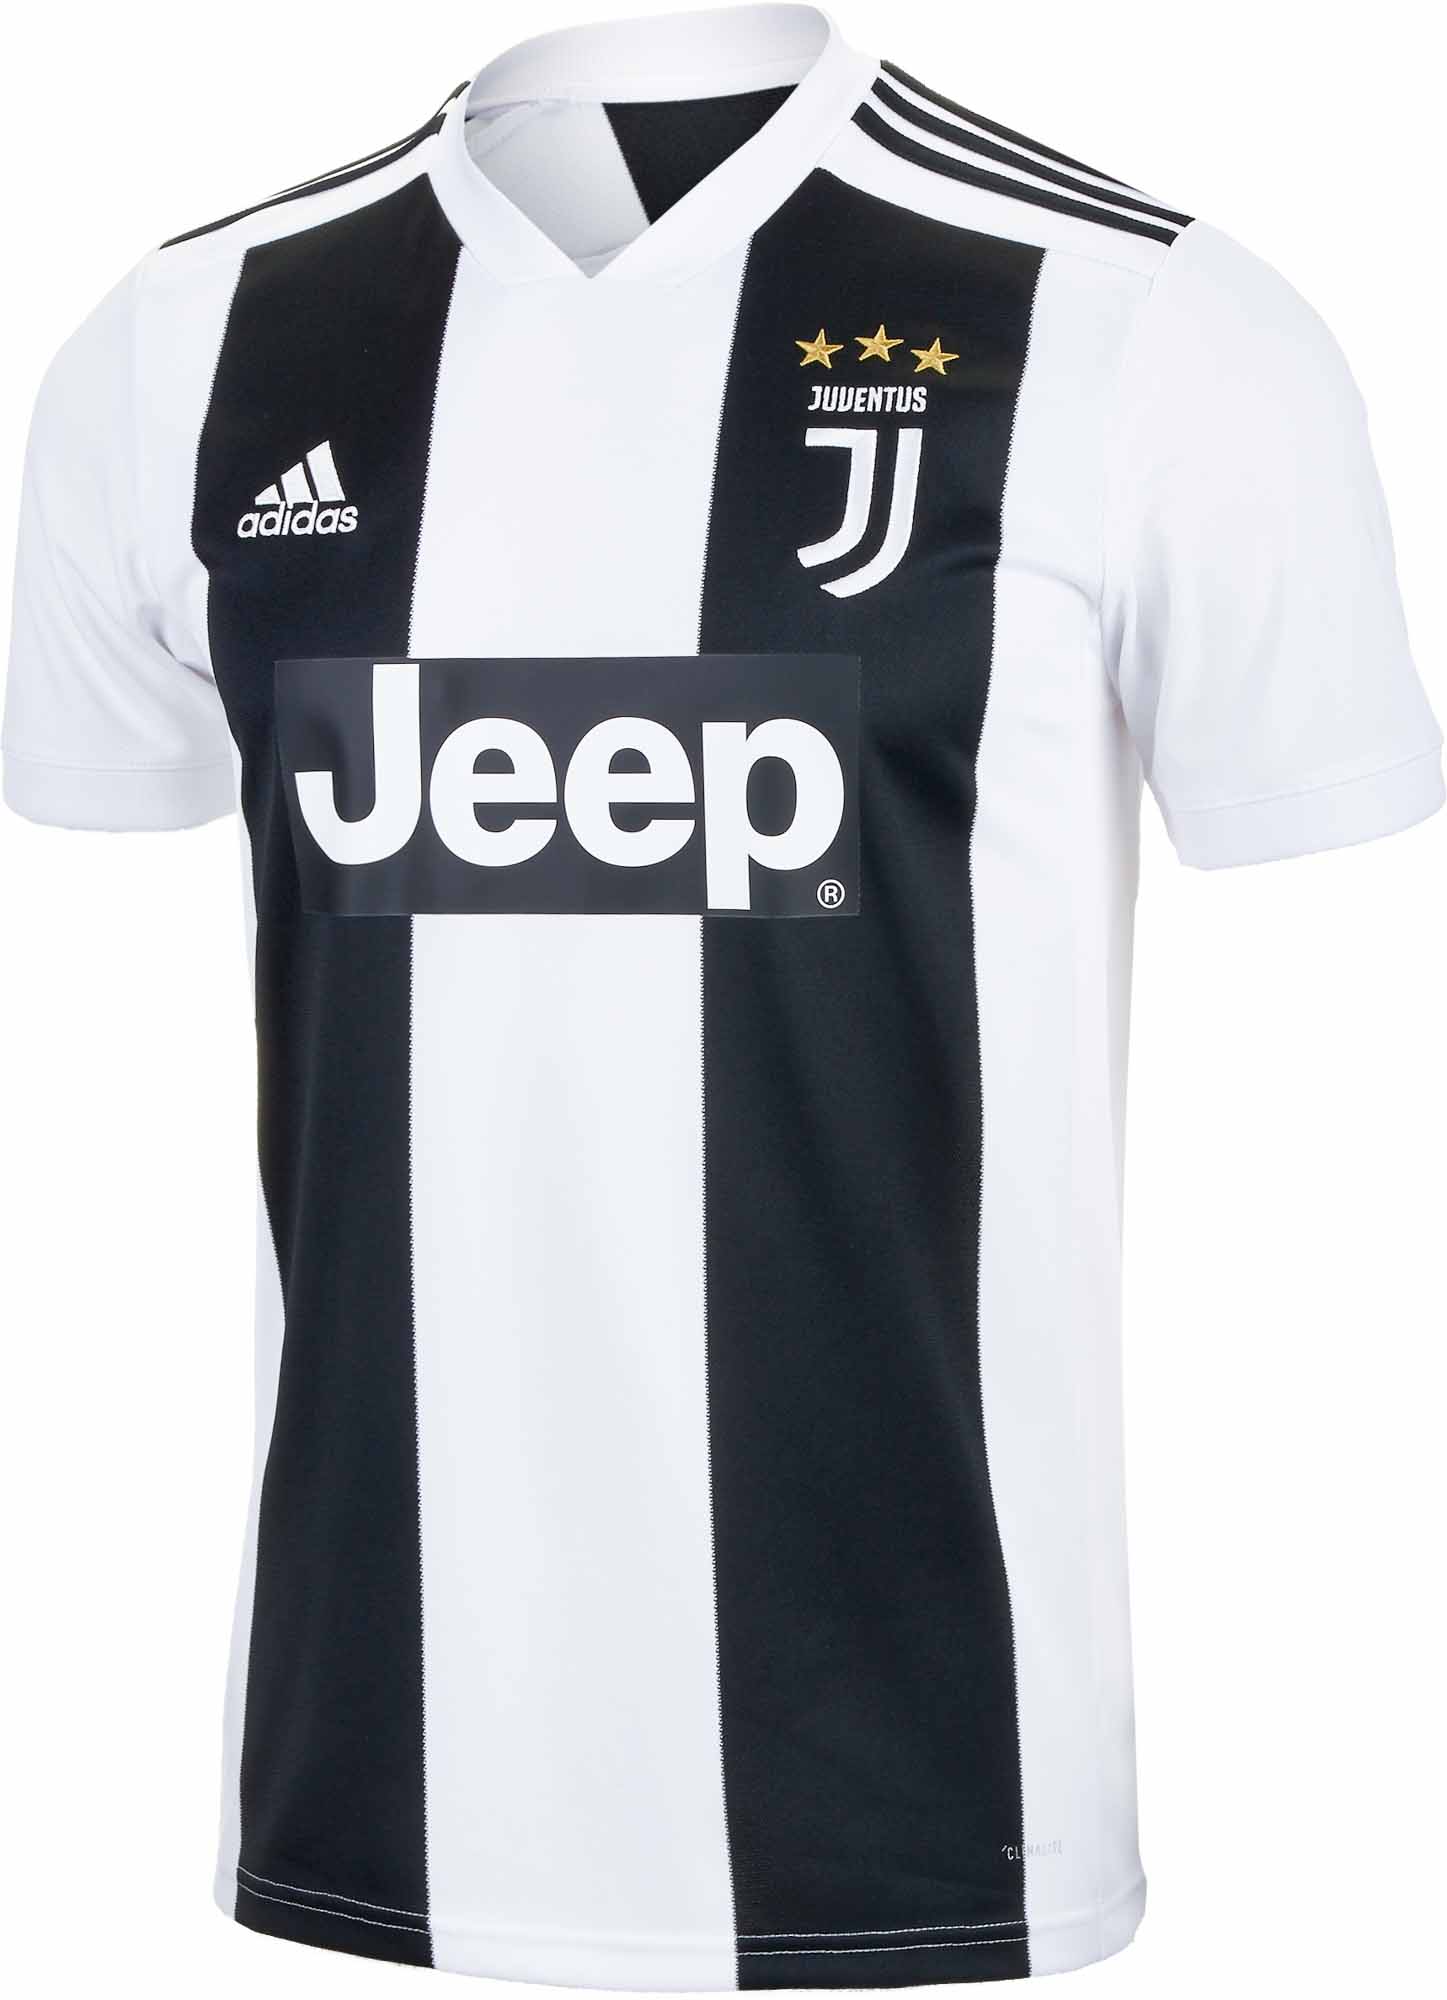 adidas Juventus Home Jersey - Youth - Black/White - Soccer Master